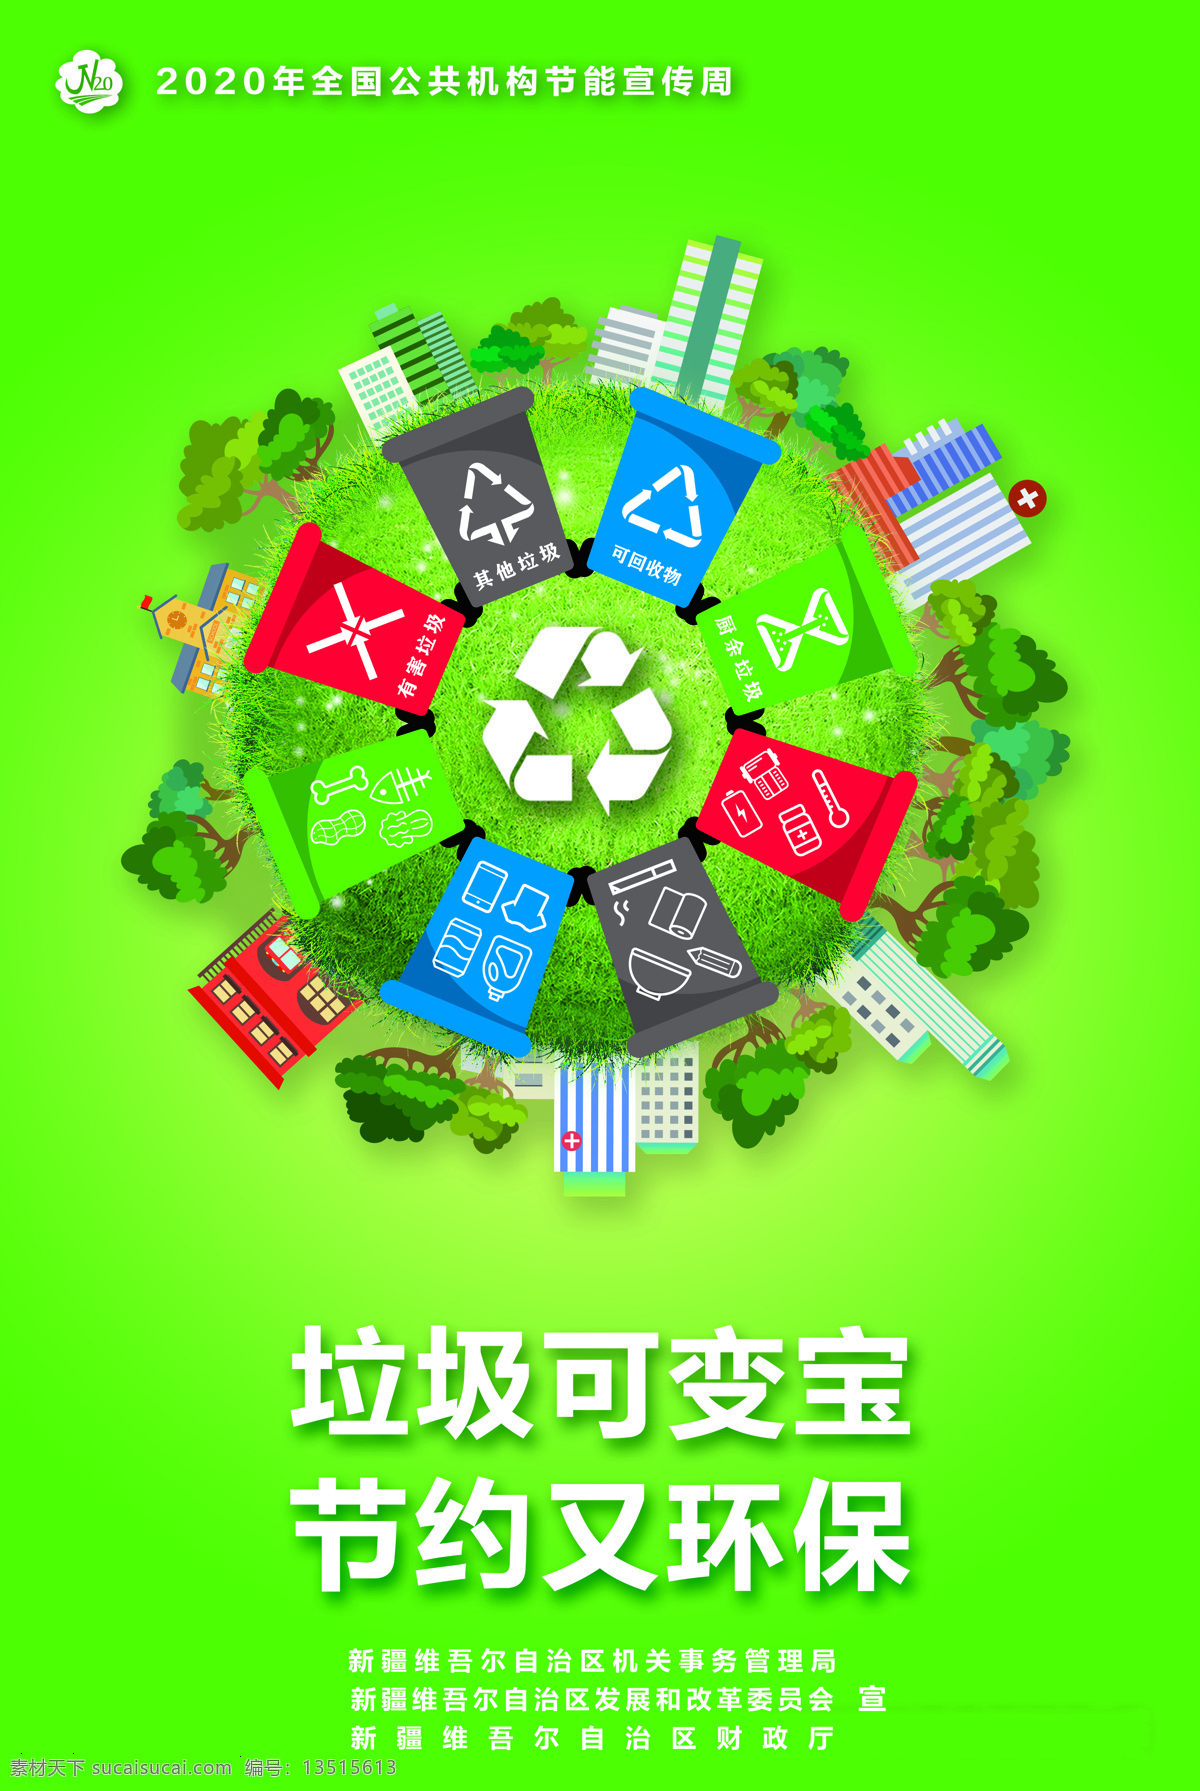 垃圾回收 节约 能源 绿水青山 2020年 宣传